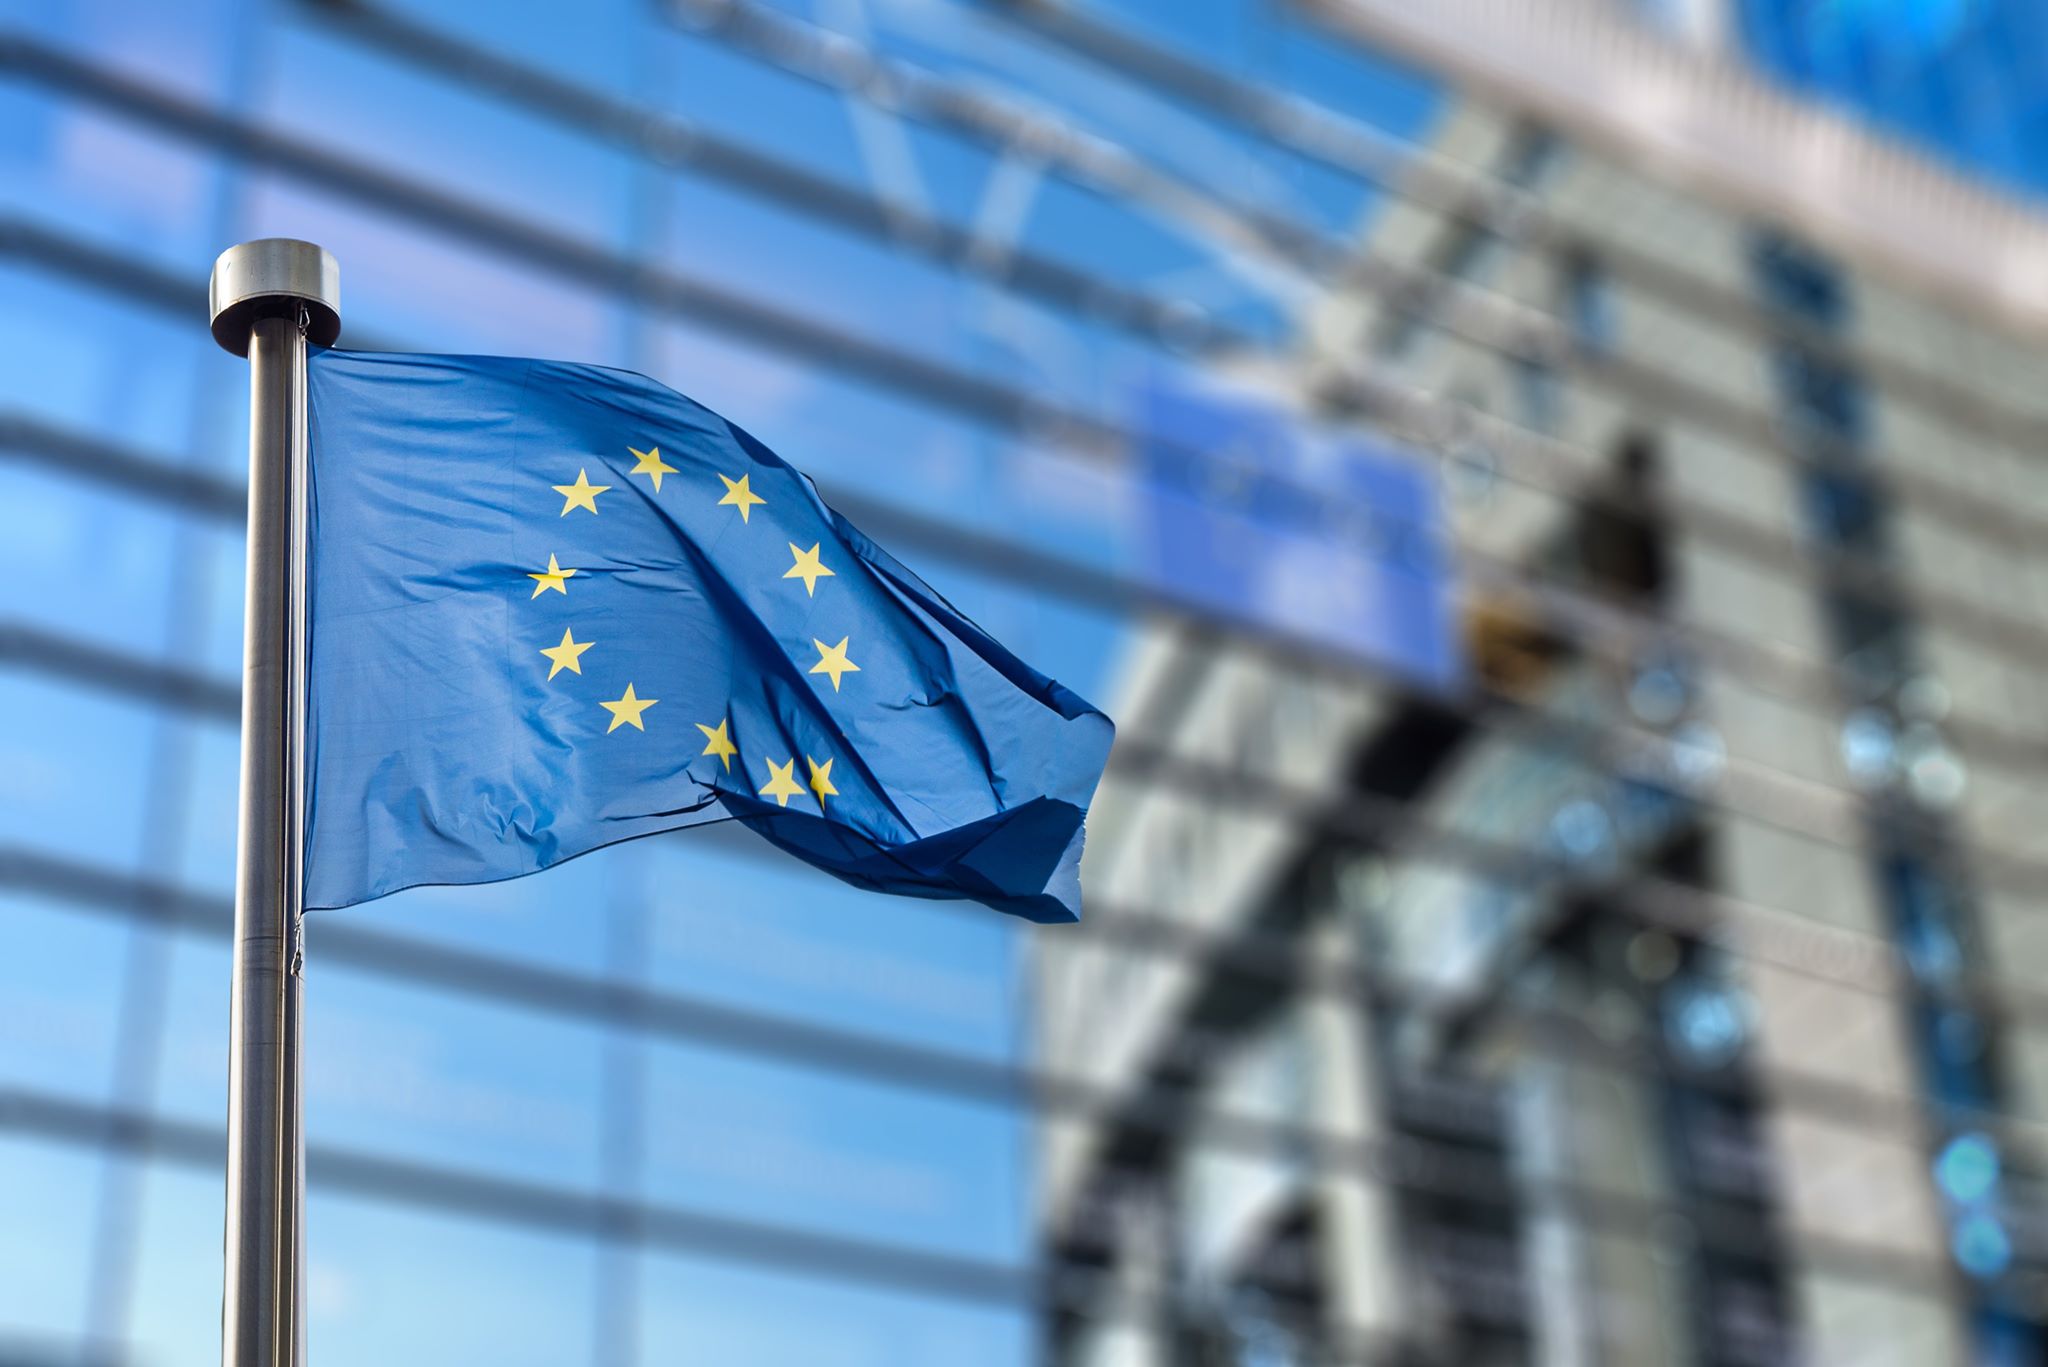 Măsuri economice urgente aprobate de instituțiile Uniunii Europene pentru susținerea IMM-urilor în perioada de criză cauzată de COVID-19